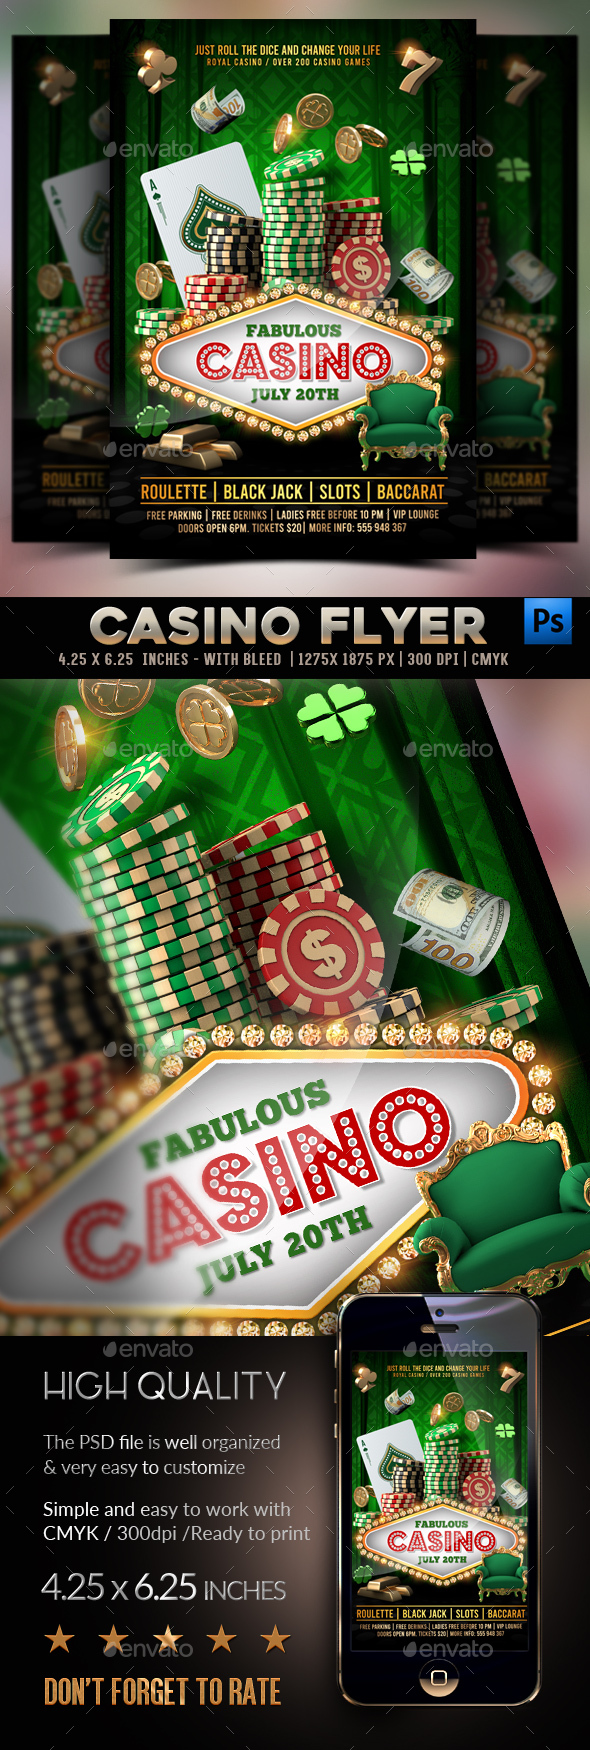 [DOWNLOAD]Casino Flyer